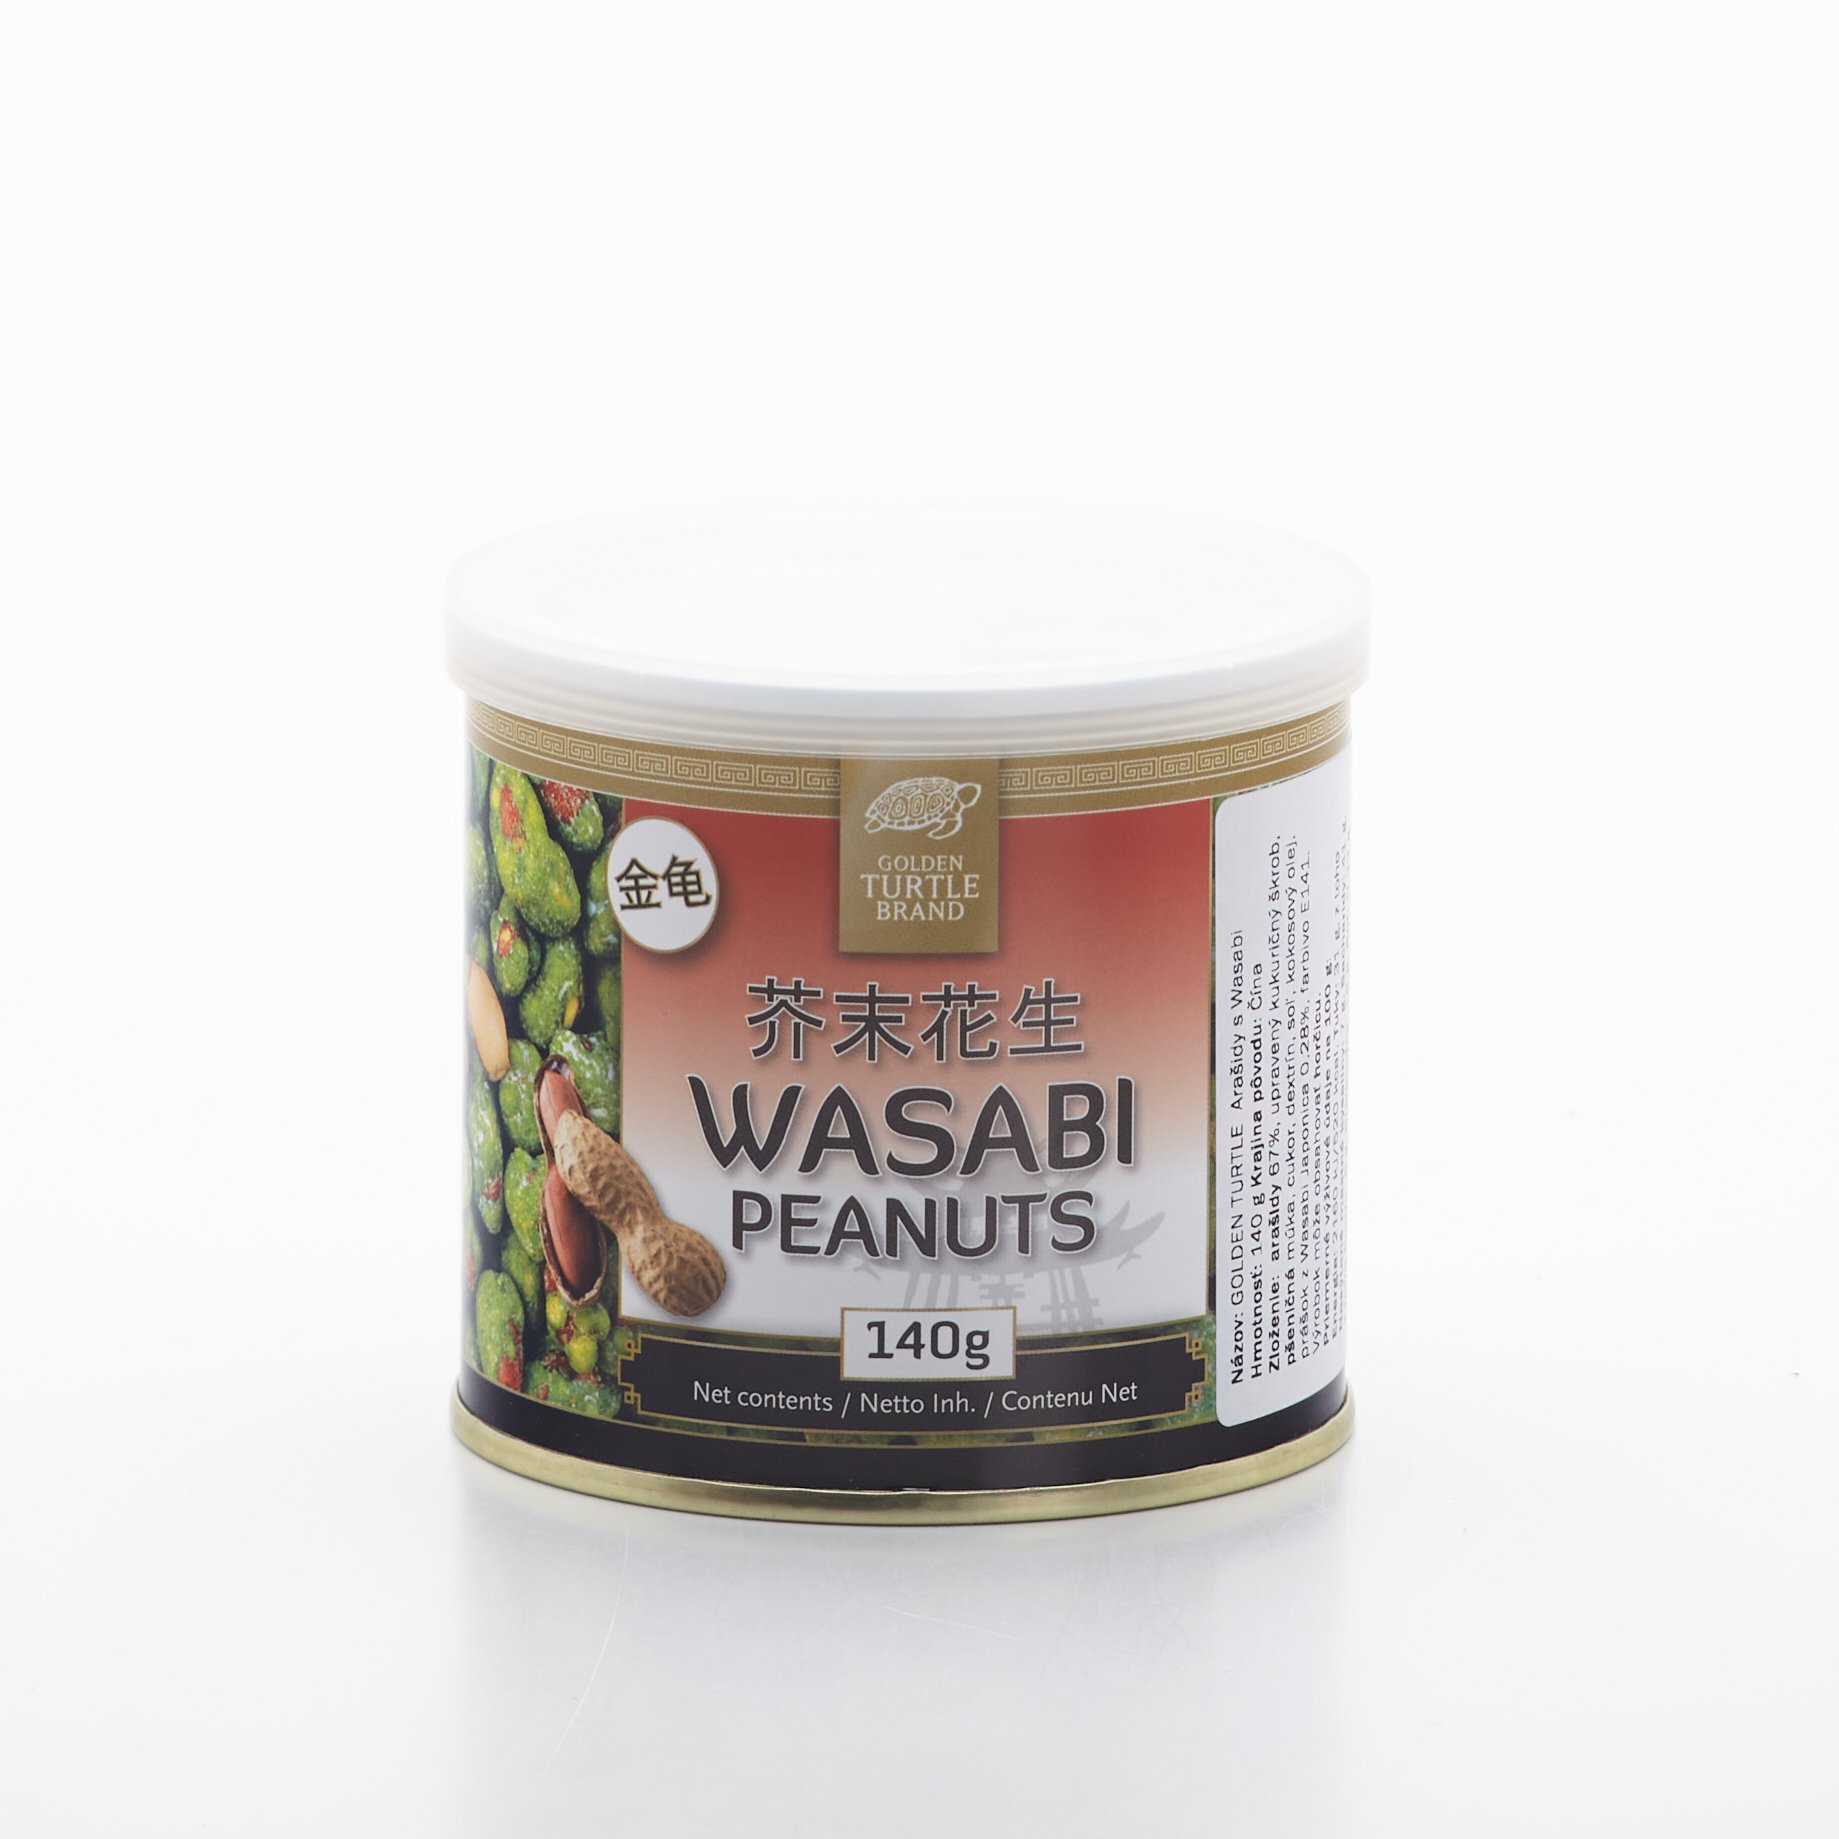 Wasabi peanuts 140g